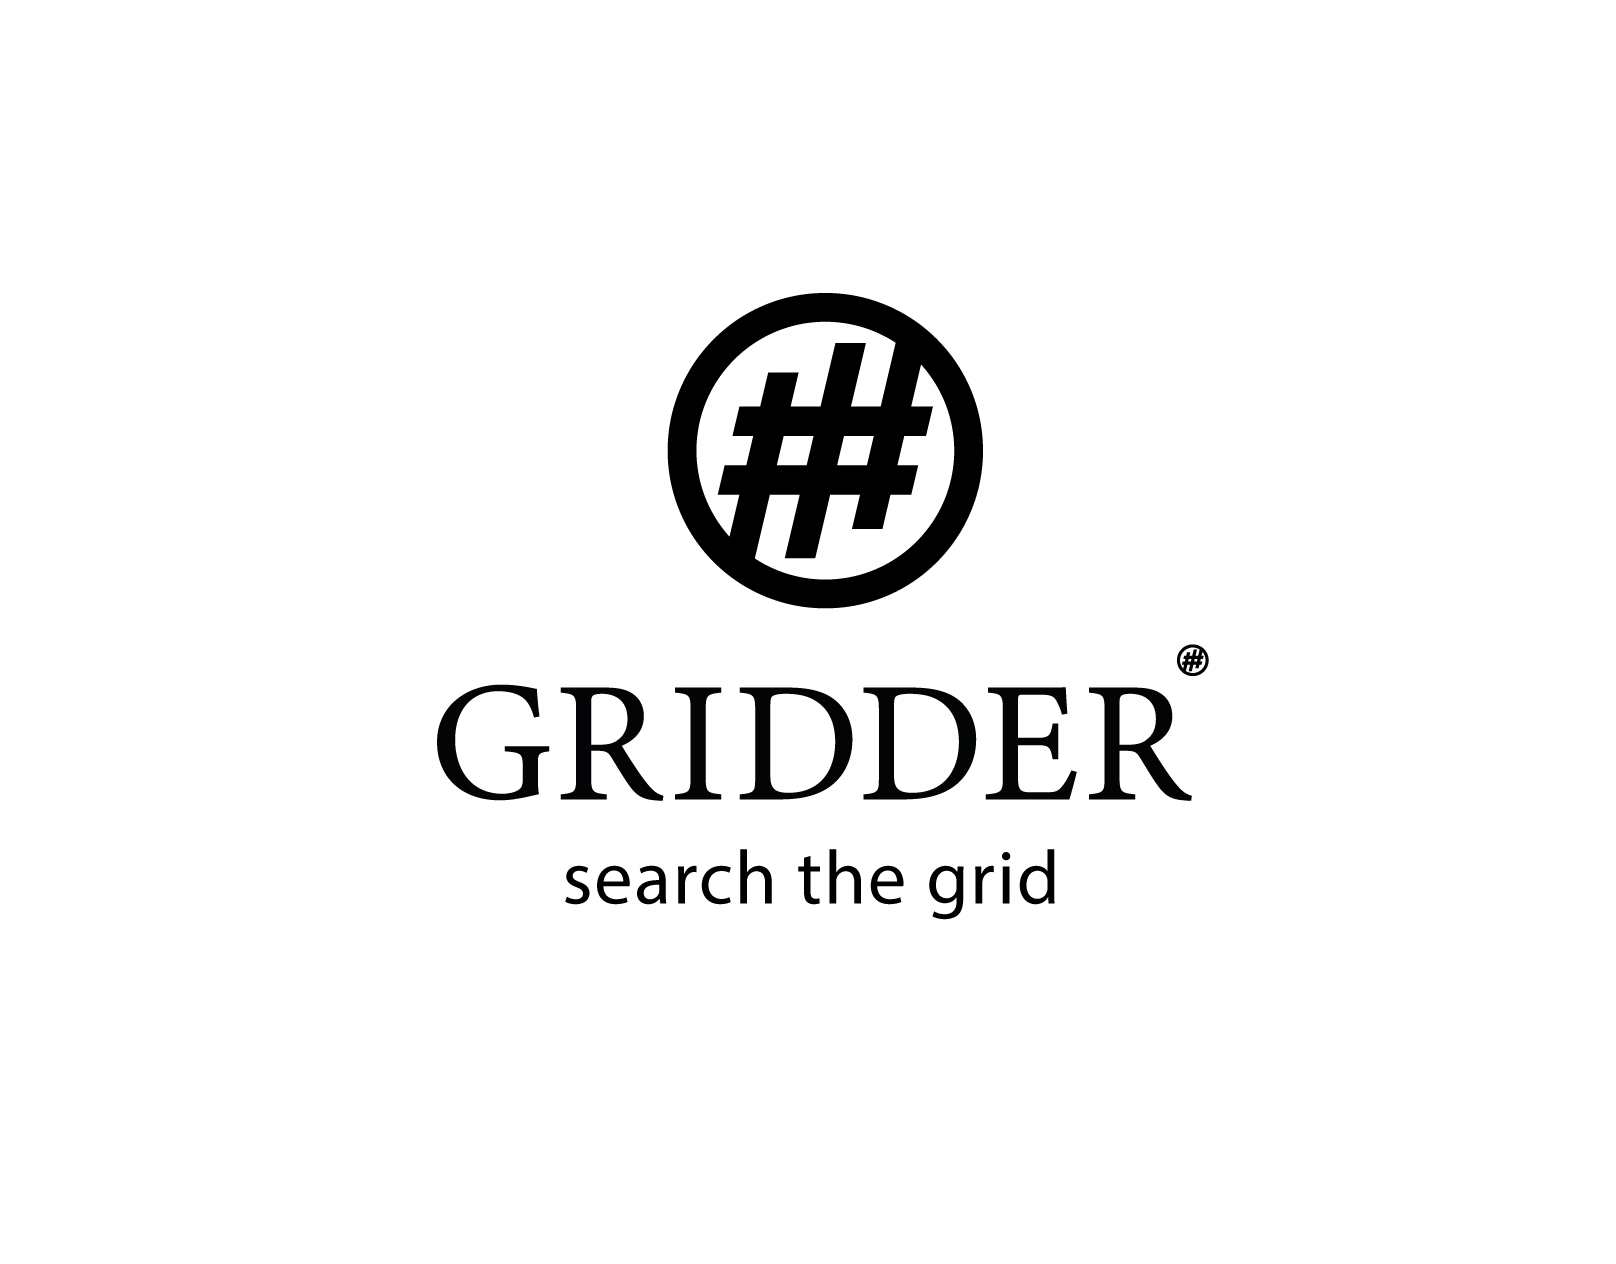 GRIDDER